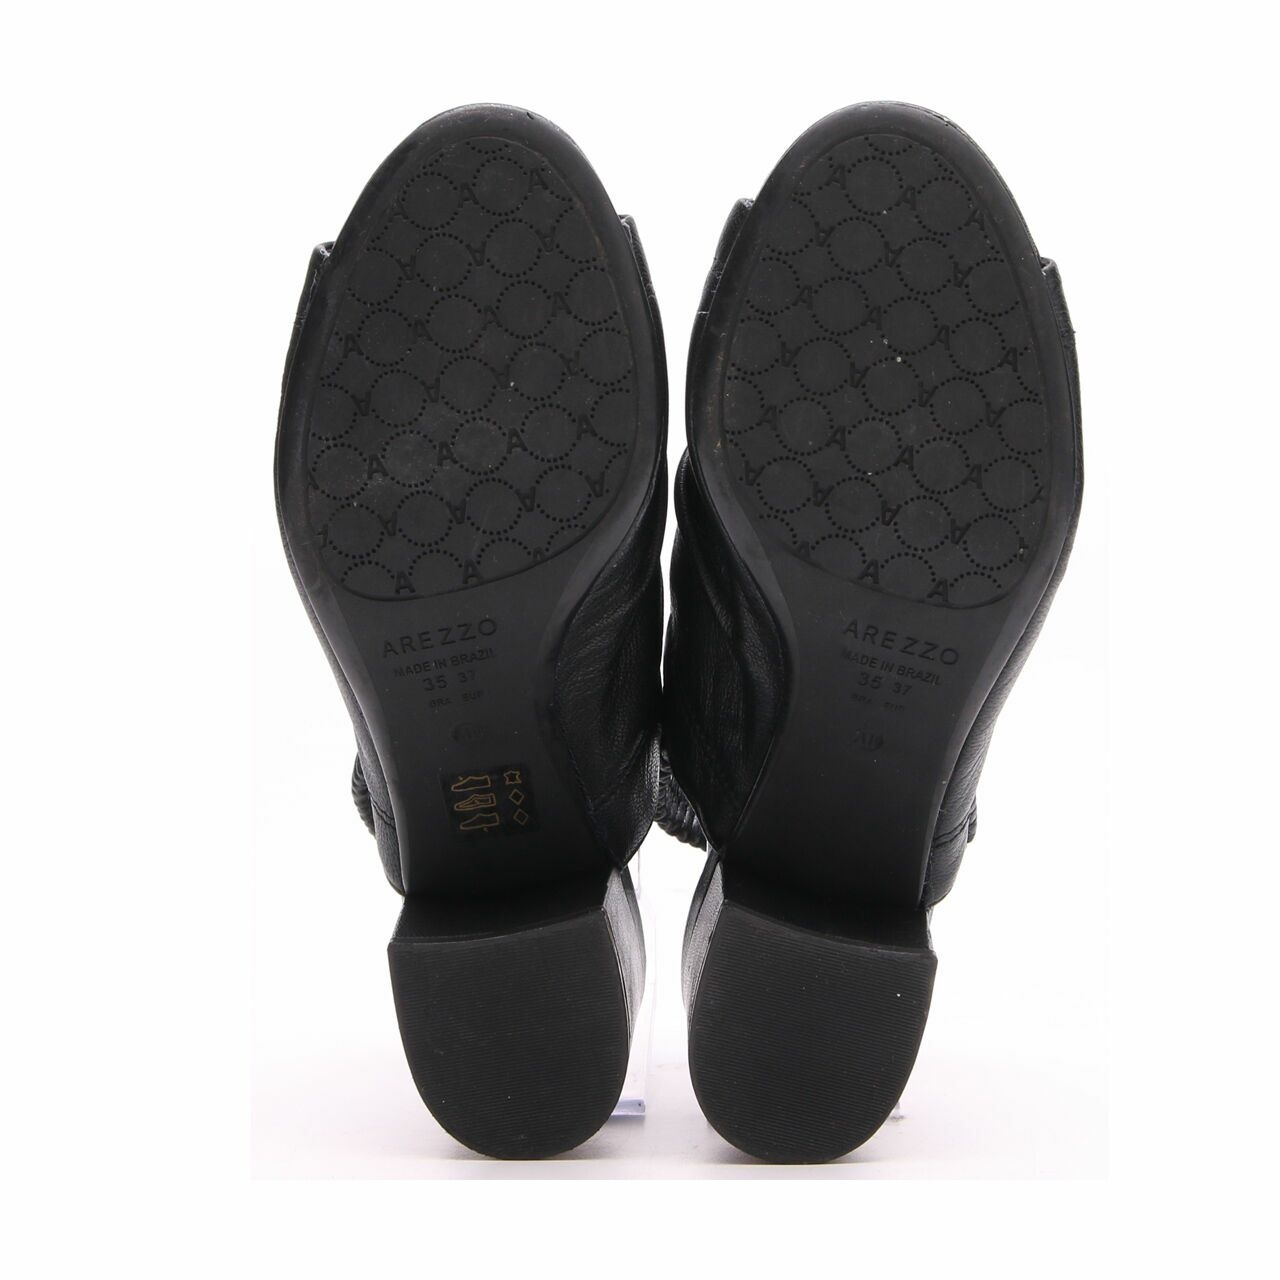 Arezzo Black Heels